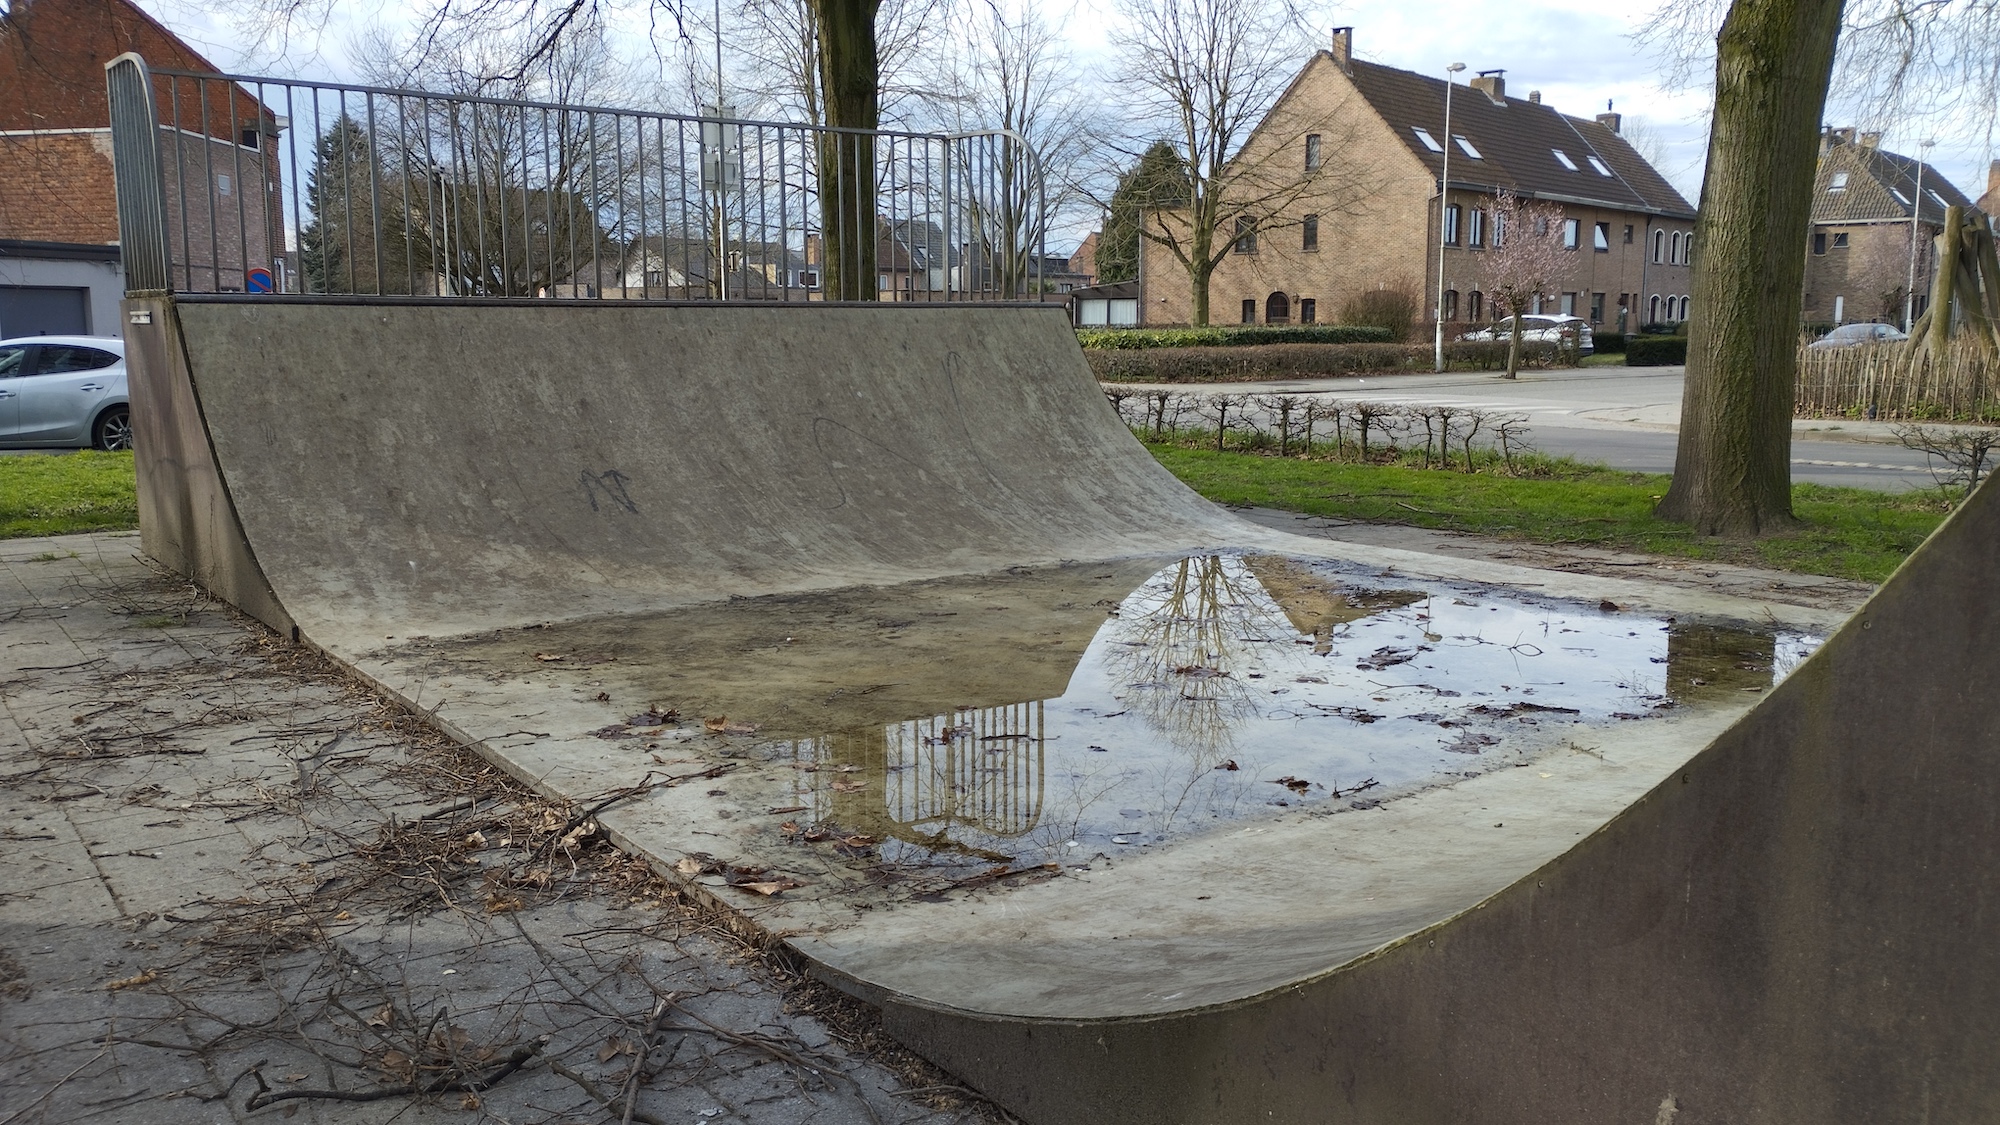 Wijngaardstraat skatepark